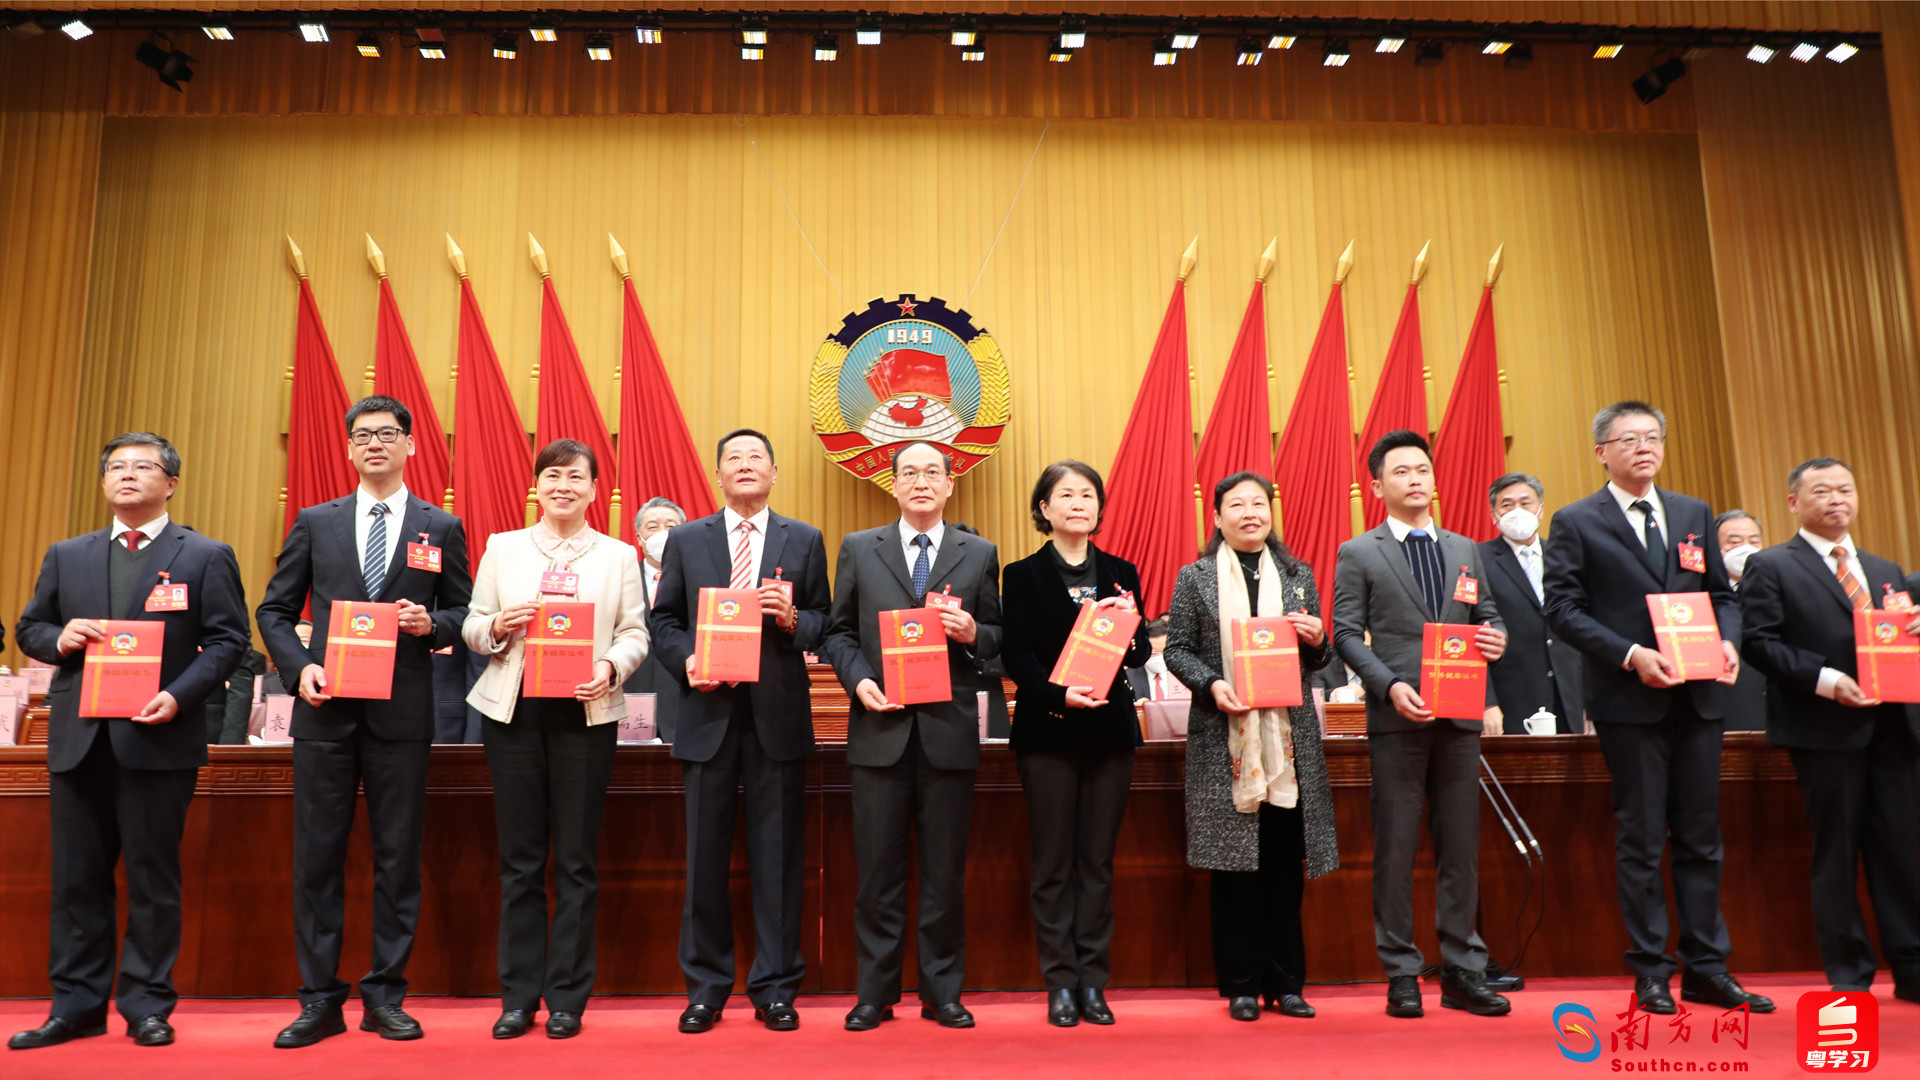 张华副主委（左三）代表农工党广东省委员会上台领奖